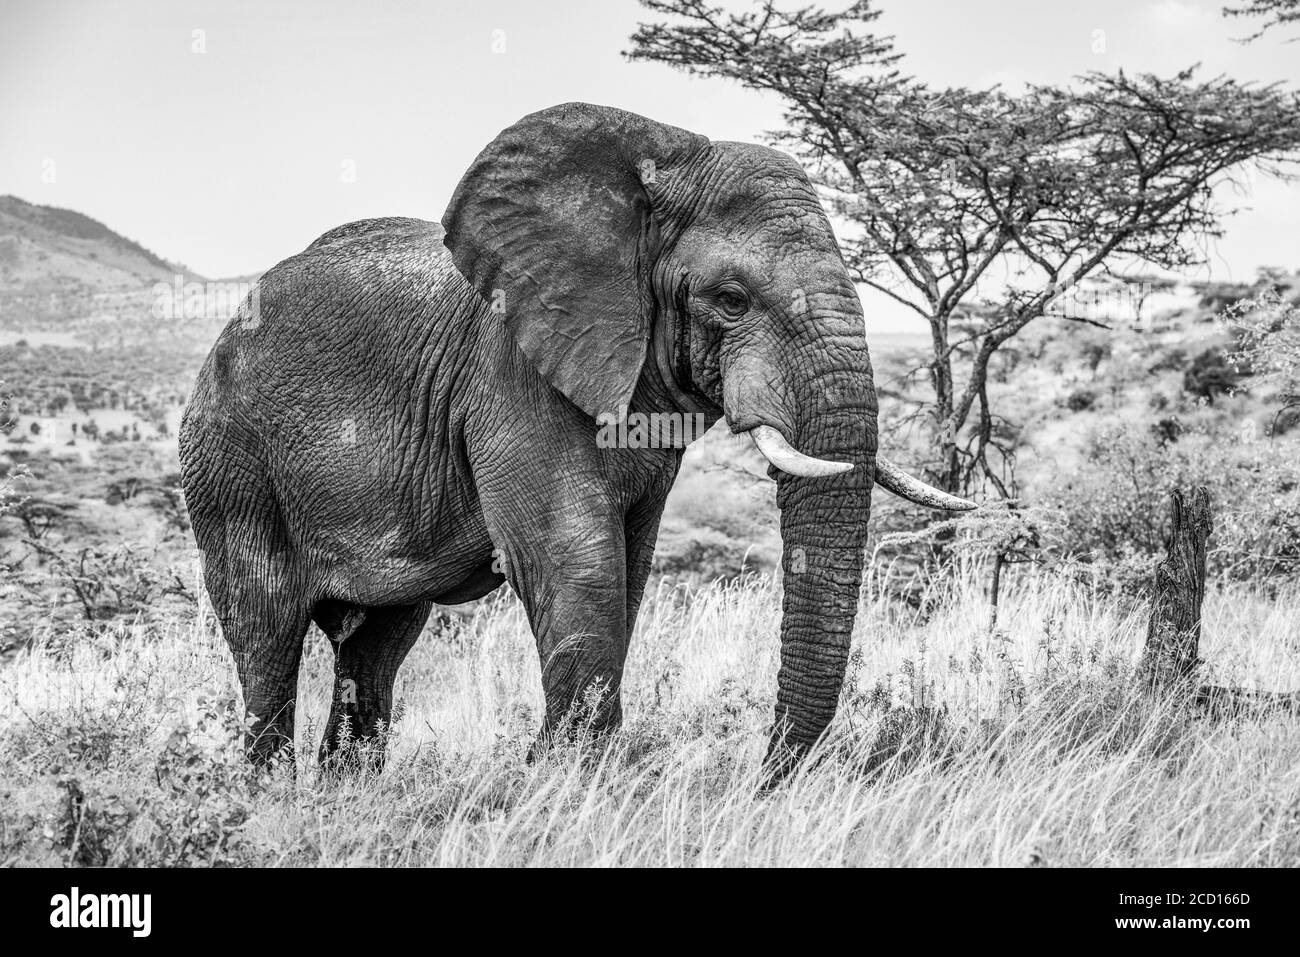 Photo noir et blanc de l'éléphant de brousse africain (Loxodonta africana) marchant sur la savane; Tanzanie Banque D'Images